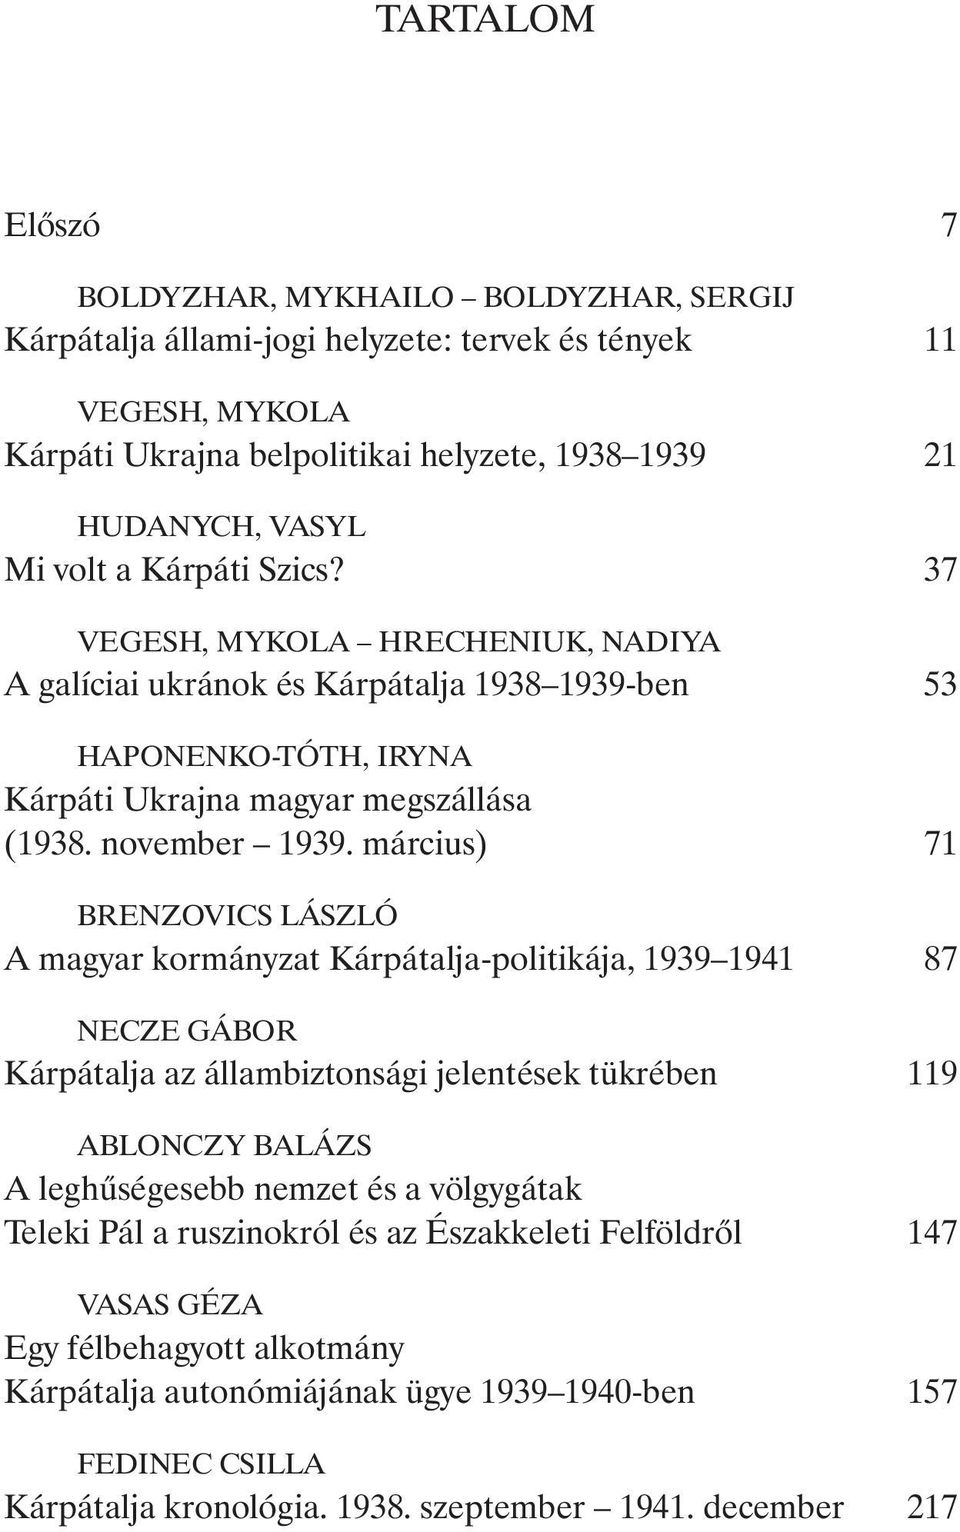 március) 71 BRENZOVICS LÁSZLÓ A magyar kormányzat Kárpátalja-politikája, 1939 1941 87 NECZE GÁBOR Kárpátalja az állambiztonsági jelentések tükrében 119 ABLONCZY BALÁZS A leghûségesebb nemzet és a